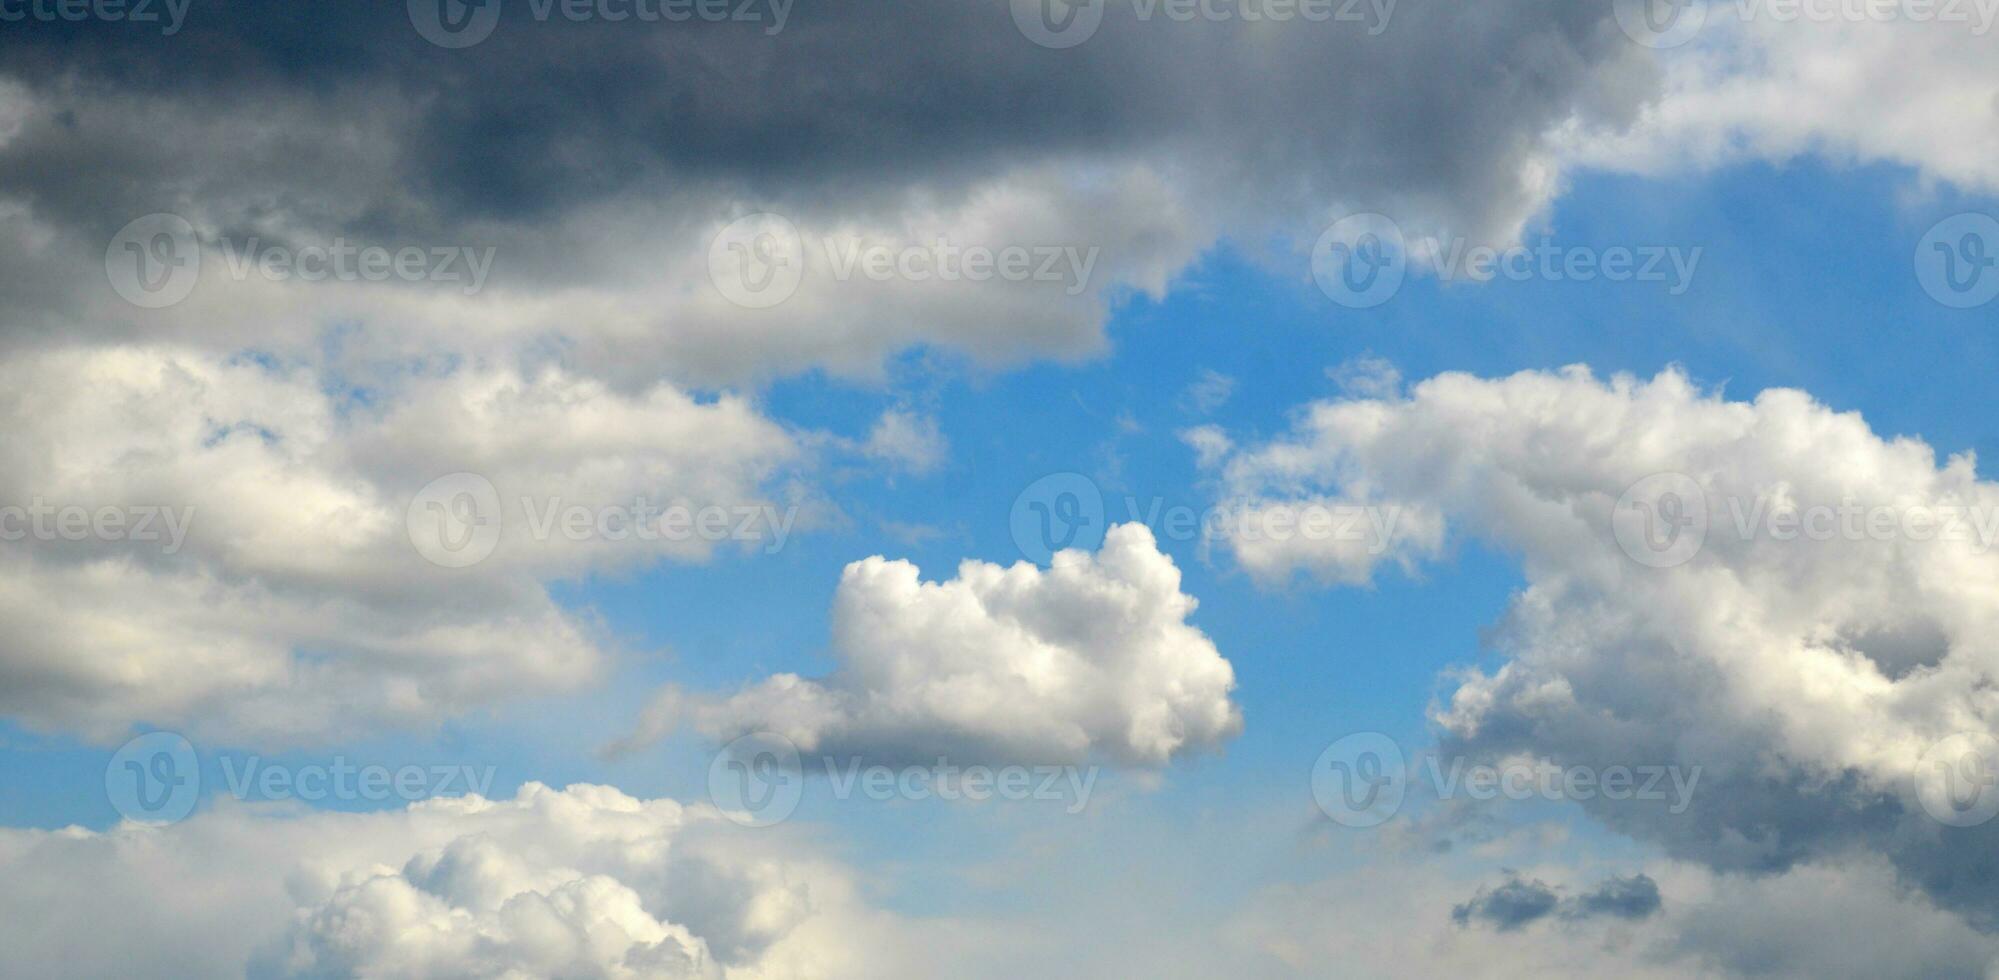 Weiß Kumulus Wolken unter dunkel Regen Wolken foto